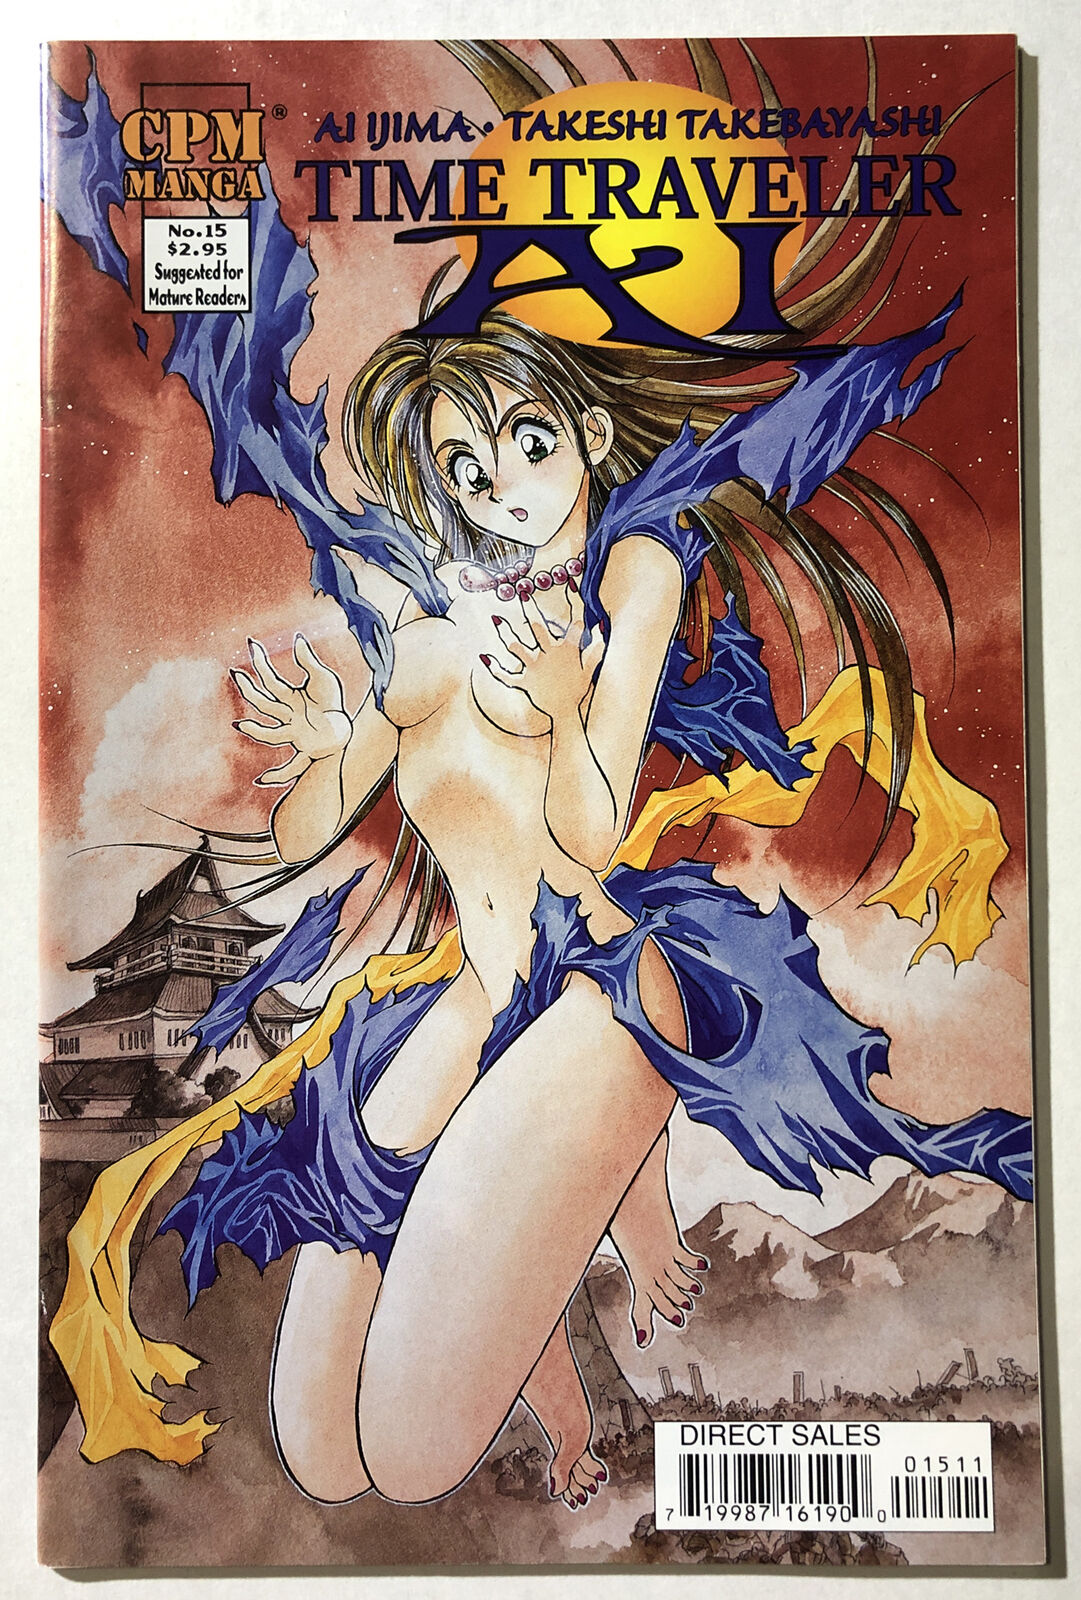 Time Traveler AI #15 - CPM Manga Comics - Ai Ijima - Rare - 2000 - VF/NM